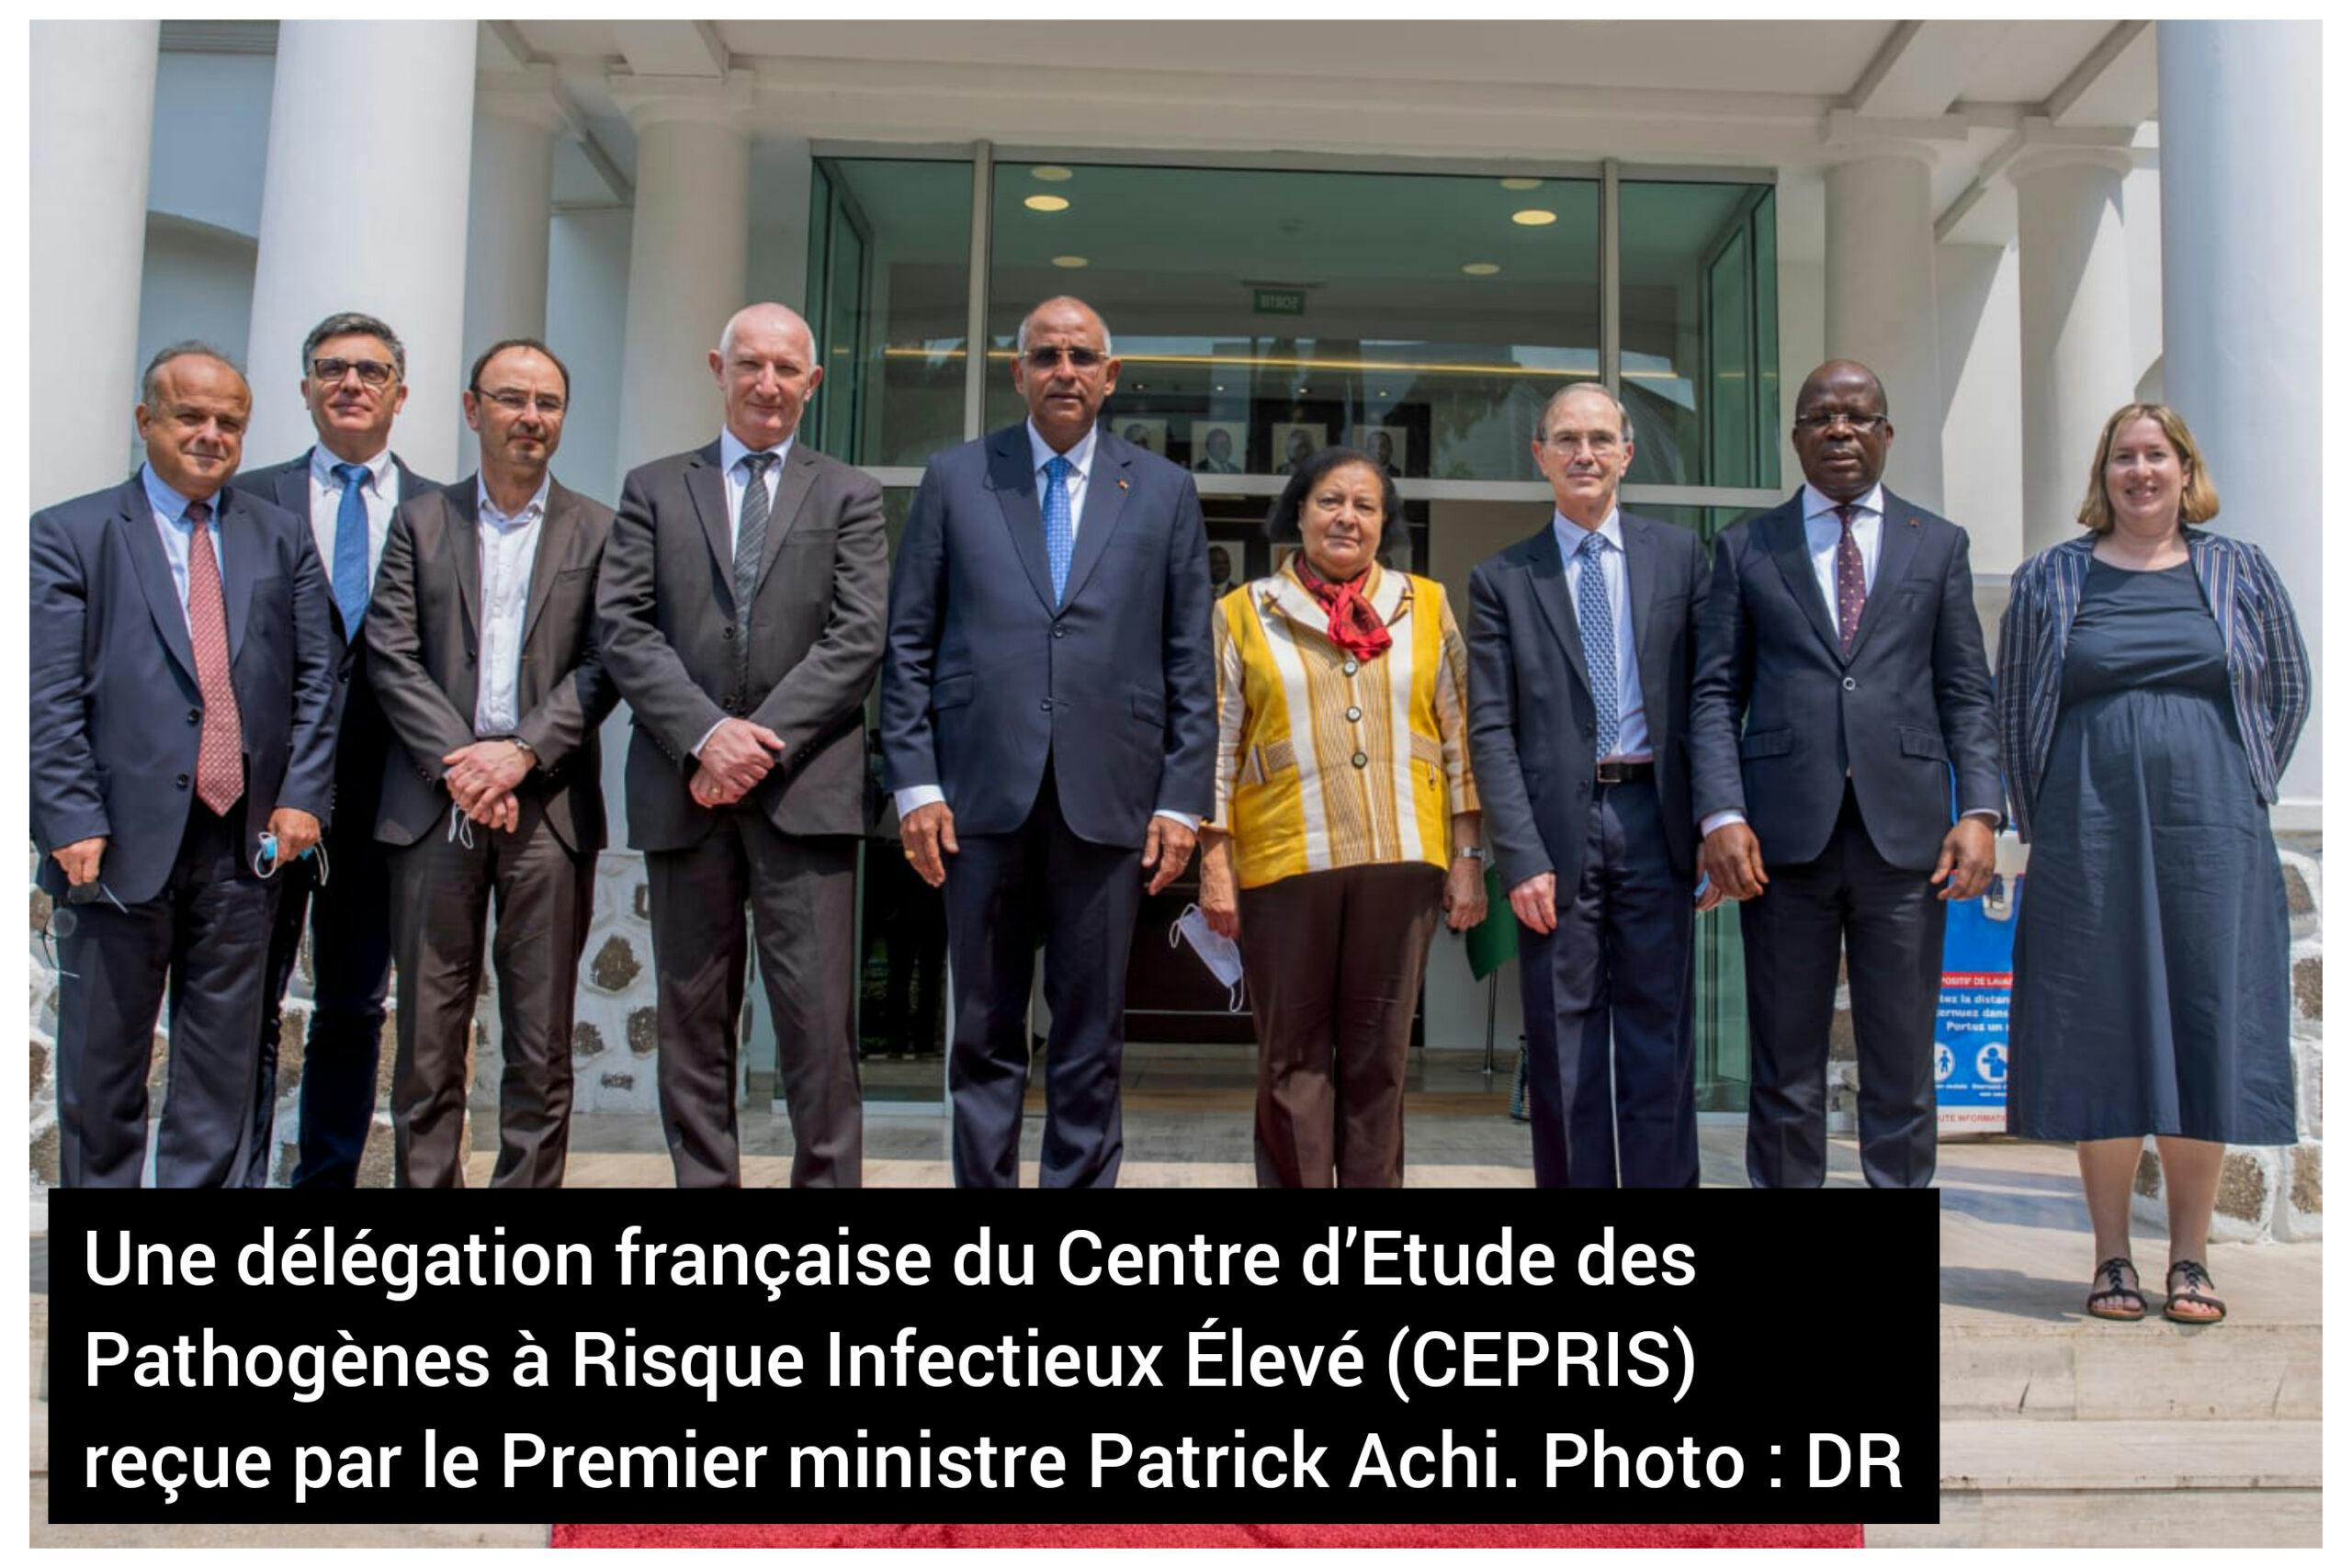 Santé : une délégation française échange avec Patrick Achi sur la mise en place de laboratoires de sécurité de haut niveau en Côte d’Ivoire